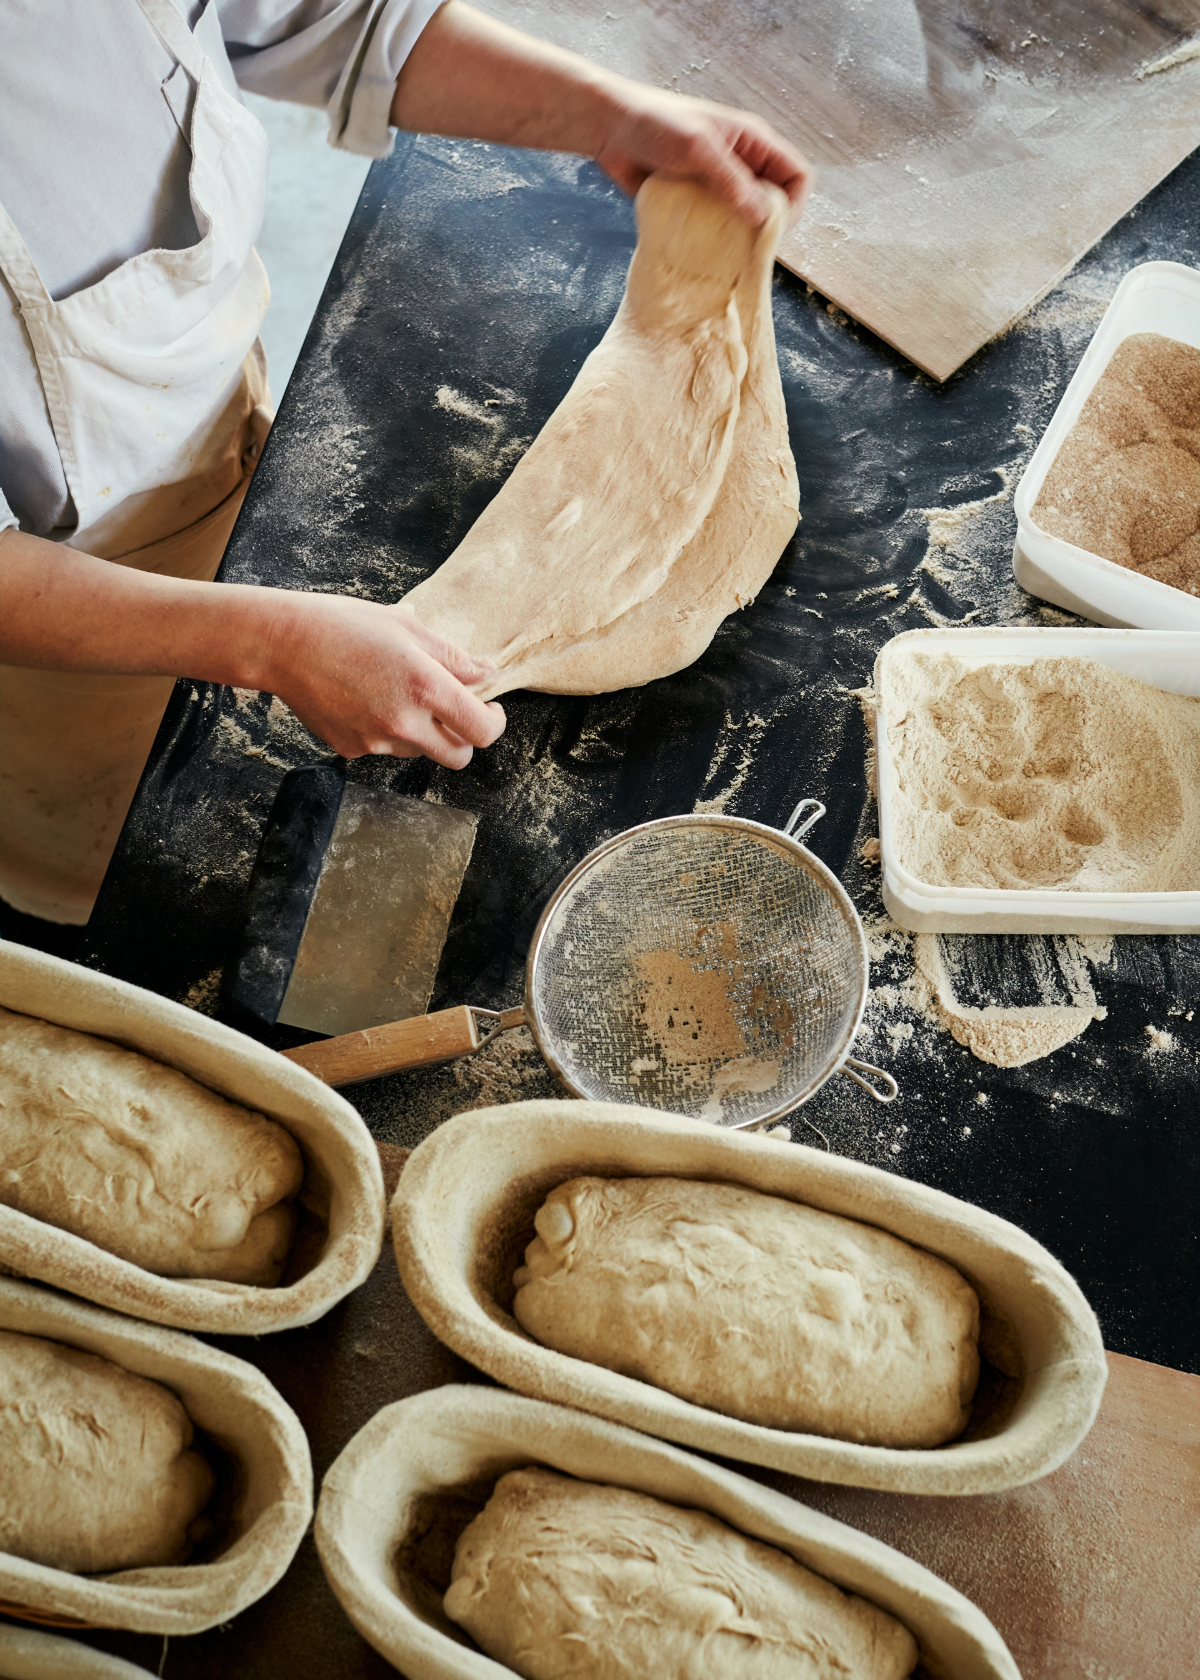 Polly shaping bread at Siding